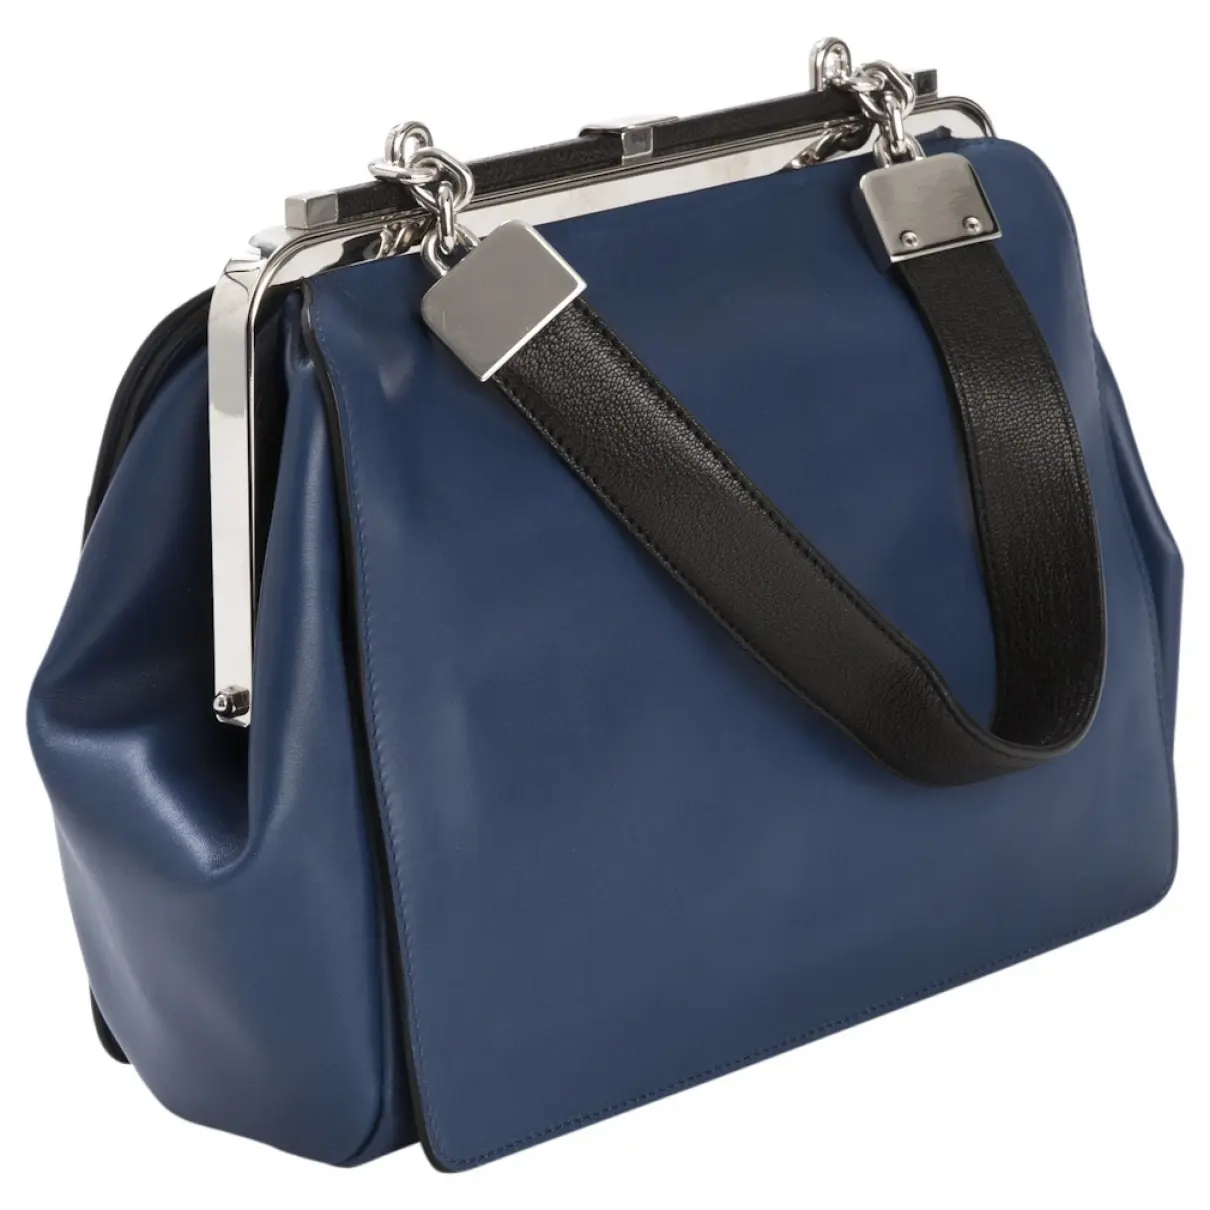 Jason Wu Leather handbag for sale